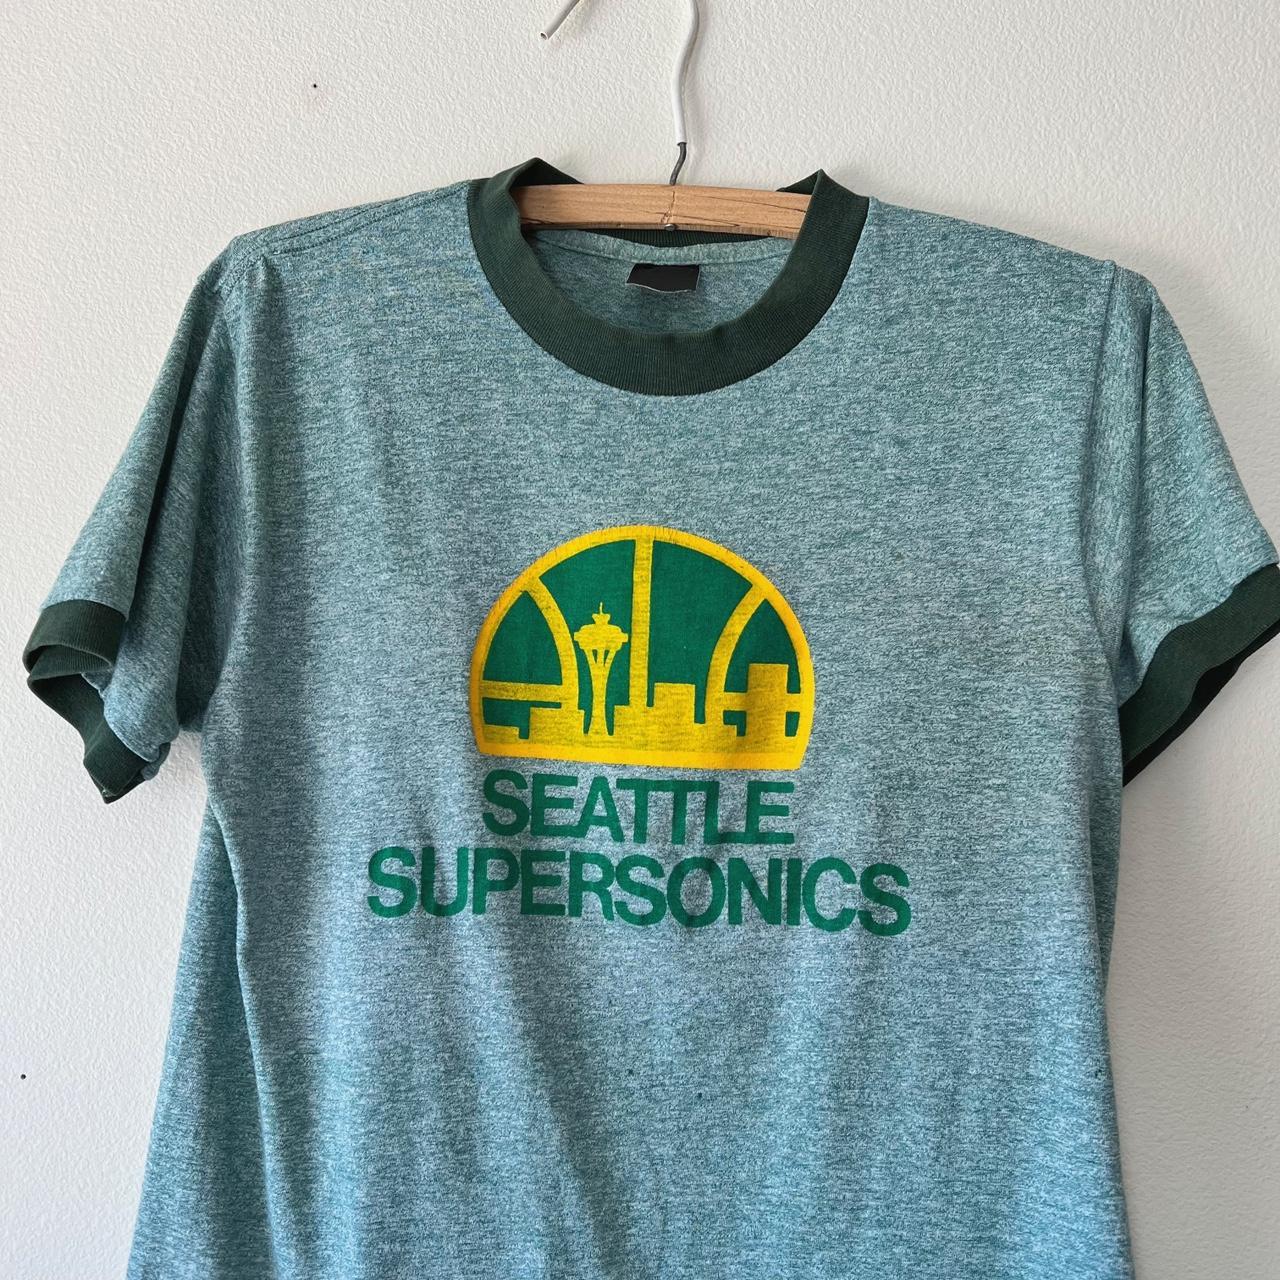 Vintage 80s Seattle Supersonics NBA ringer short - Depop